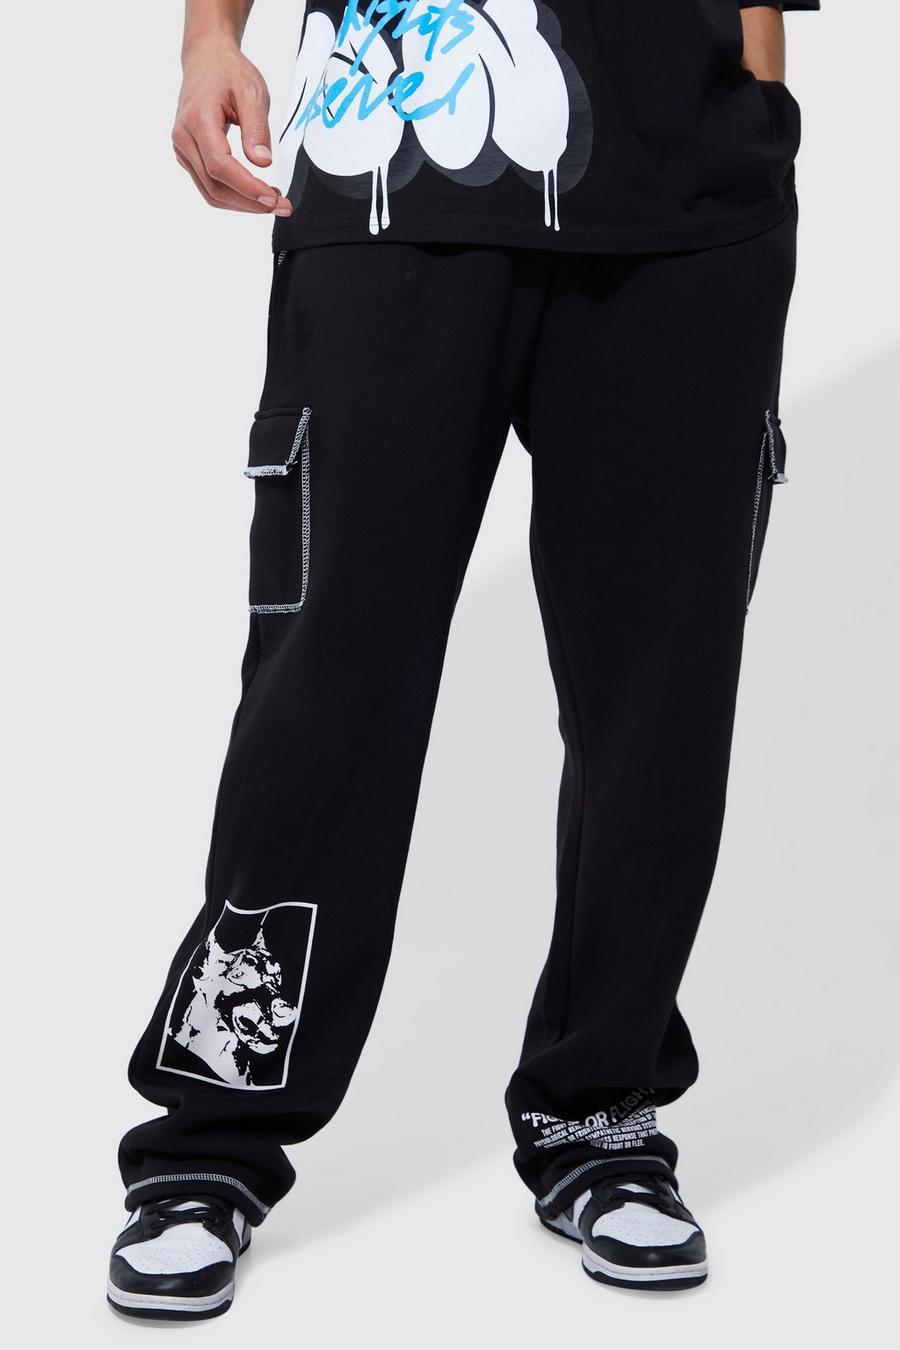 Pantalón deportivo Tall cargo largo con cordón elástico y costuras, Black image number 1